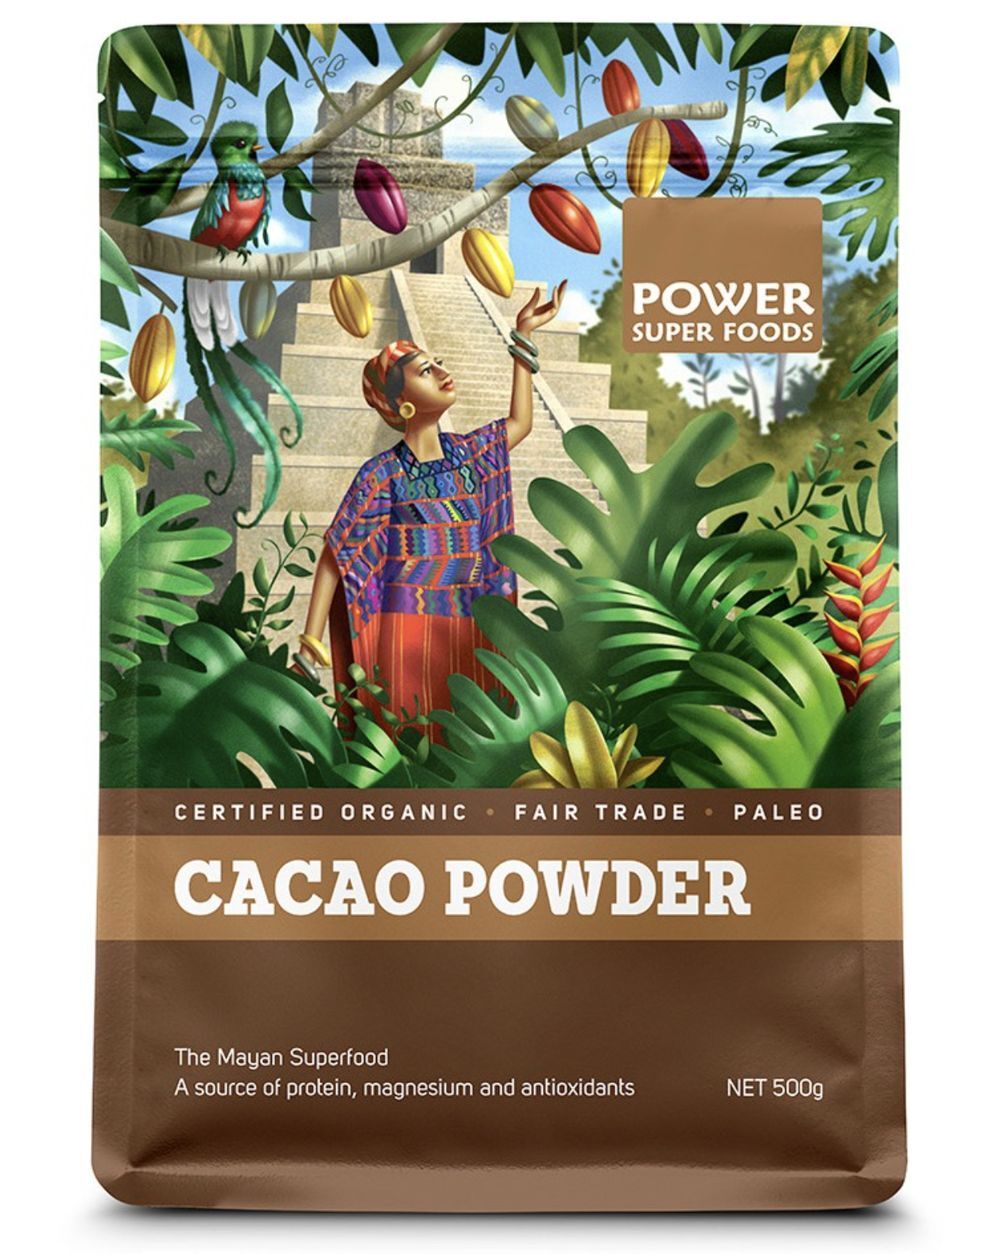 Power Super Foods - Cacao Powder 500g